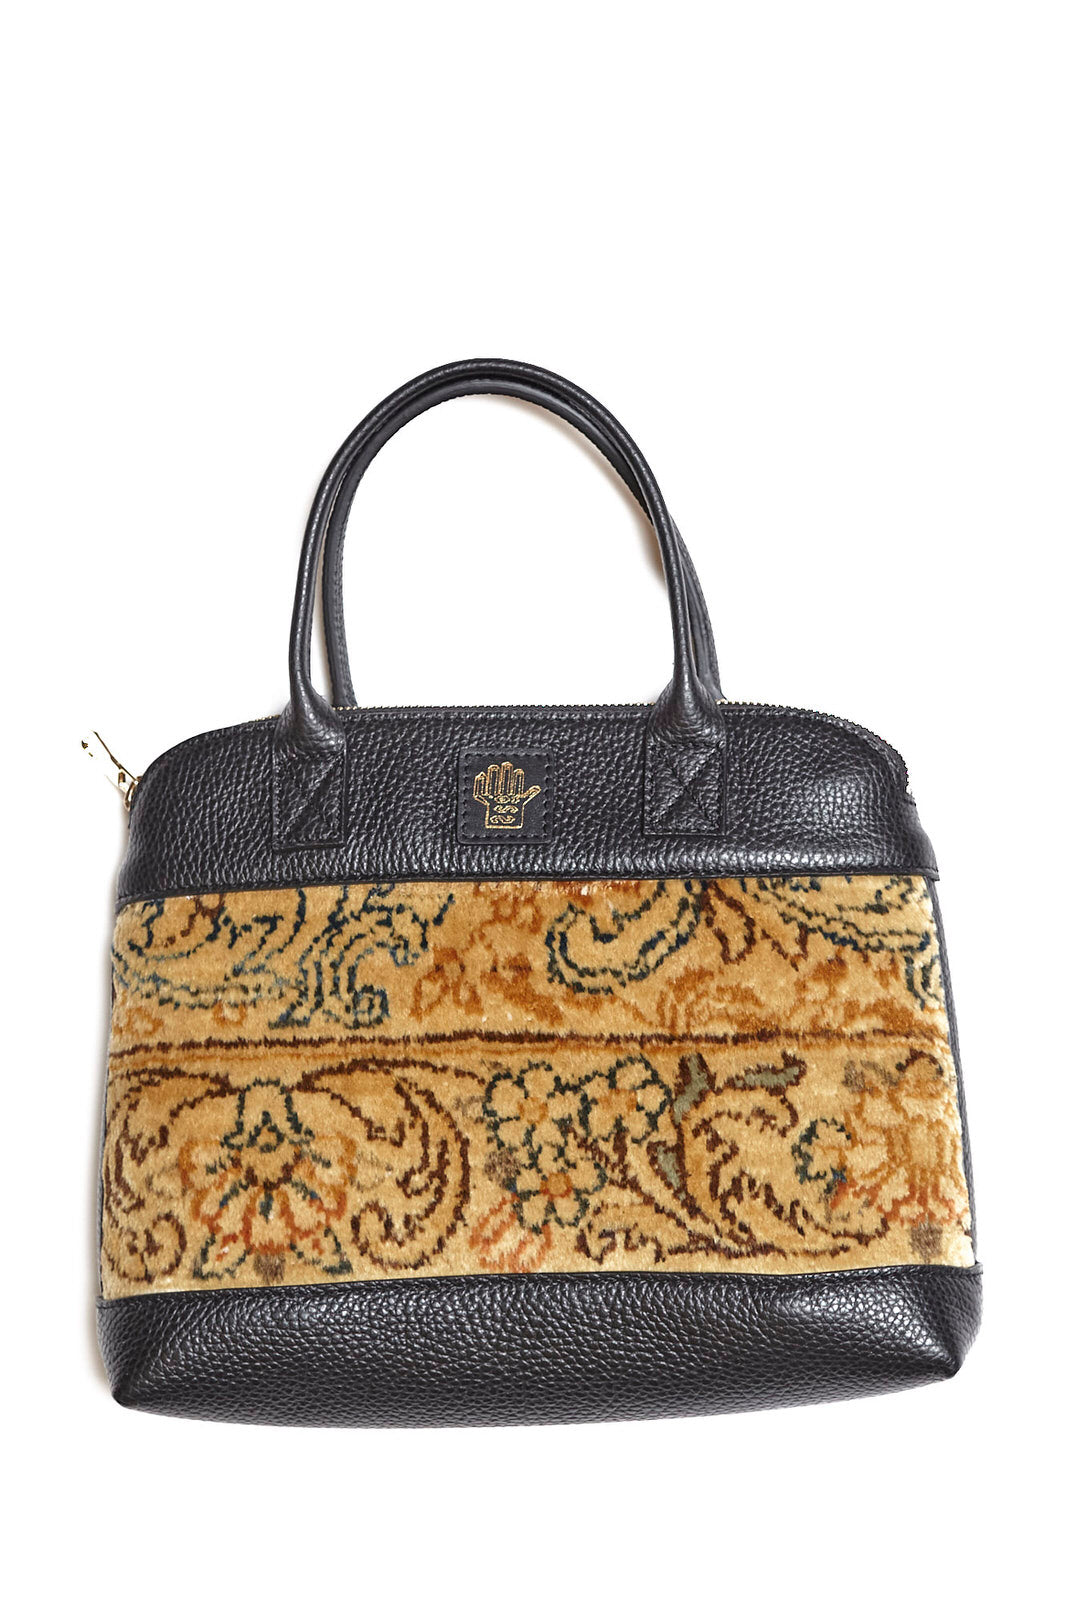 King Kennedy Isadora Handbag - 00018